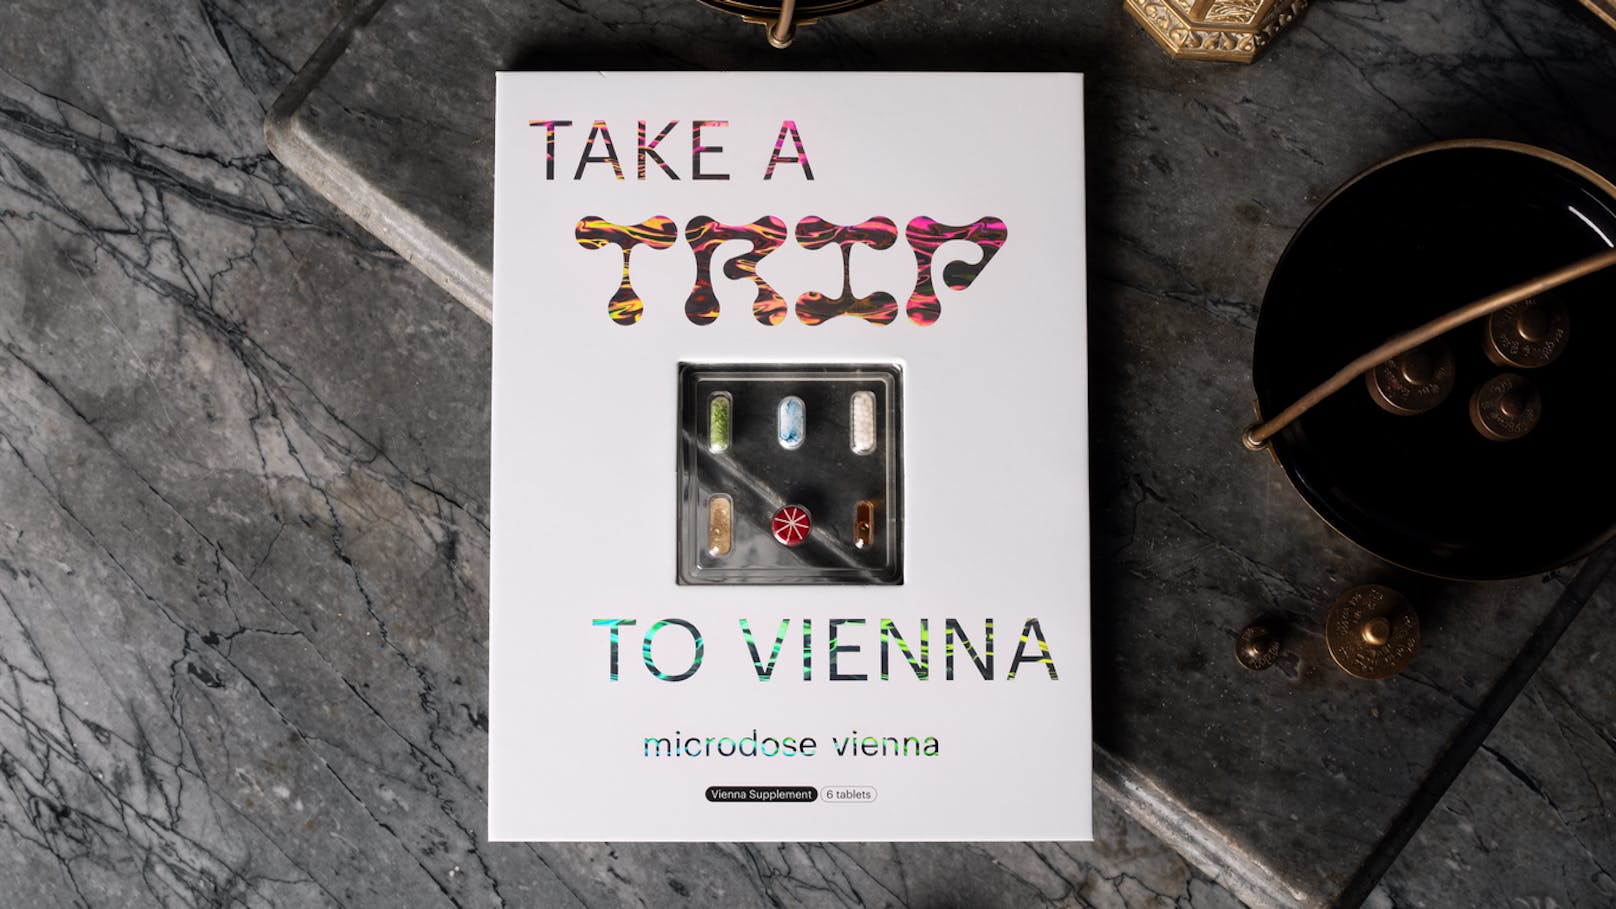 Mit der neuen Kampagne "microdosing vienna" lädt man zu einem "Trip" nach Wien ein.&nbsp;